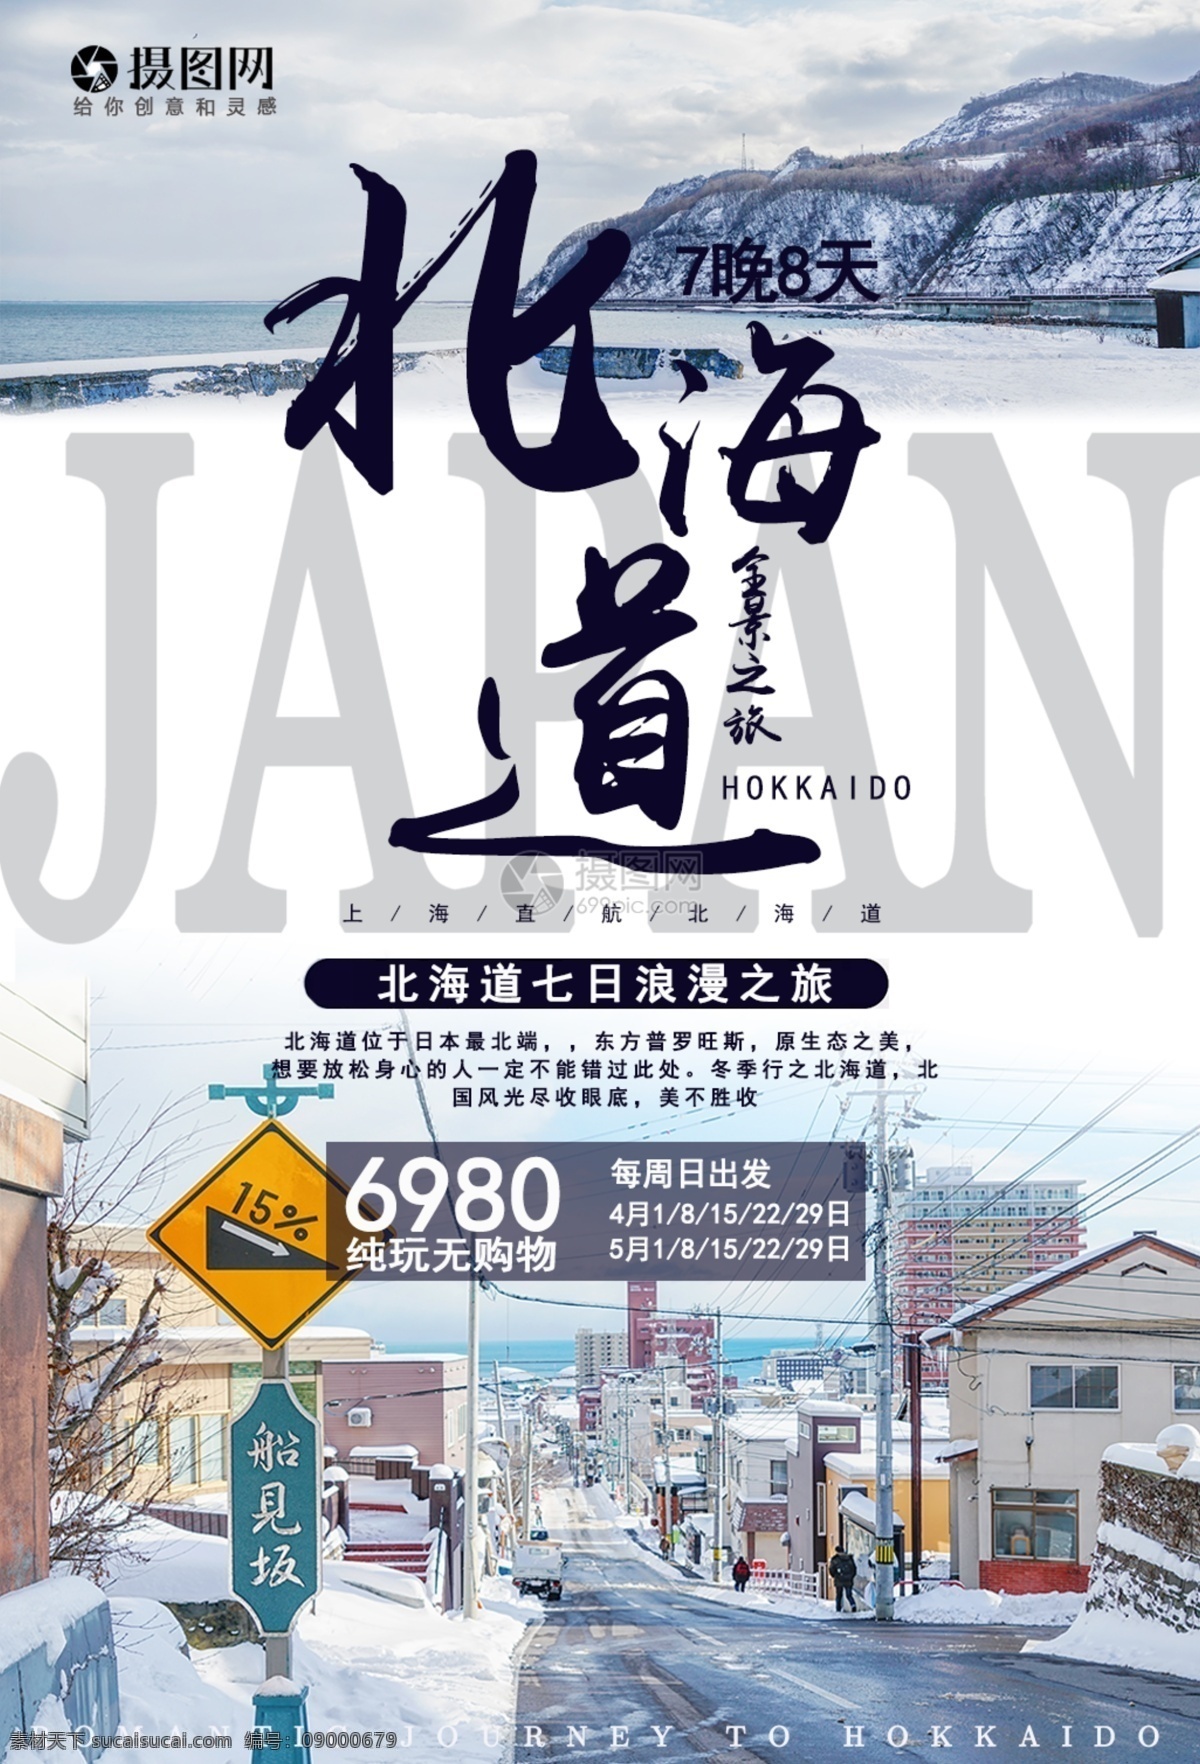 日本 北海道 旅游 小樽 浪漫 出国 旅行 国外 旅途 著名景点 景区 国外游 出境游 旅行社 旅行团 跟团游 旅游海报